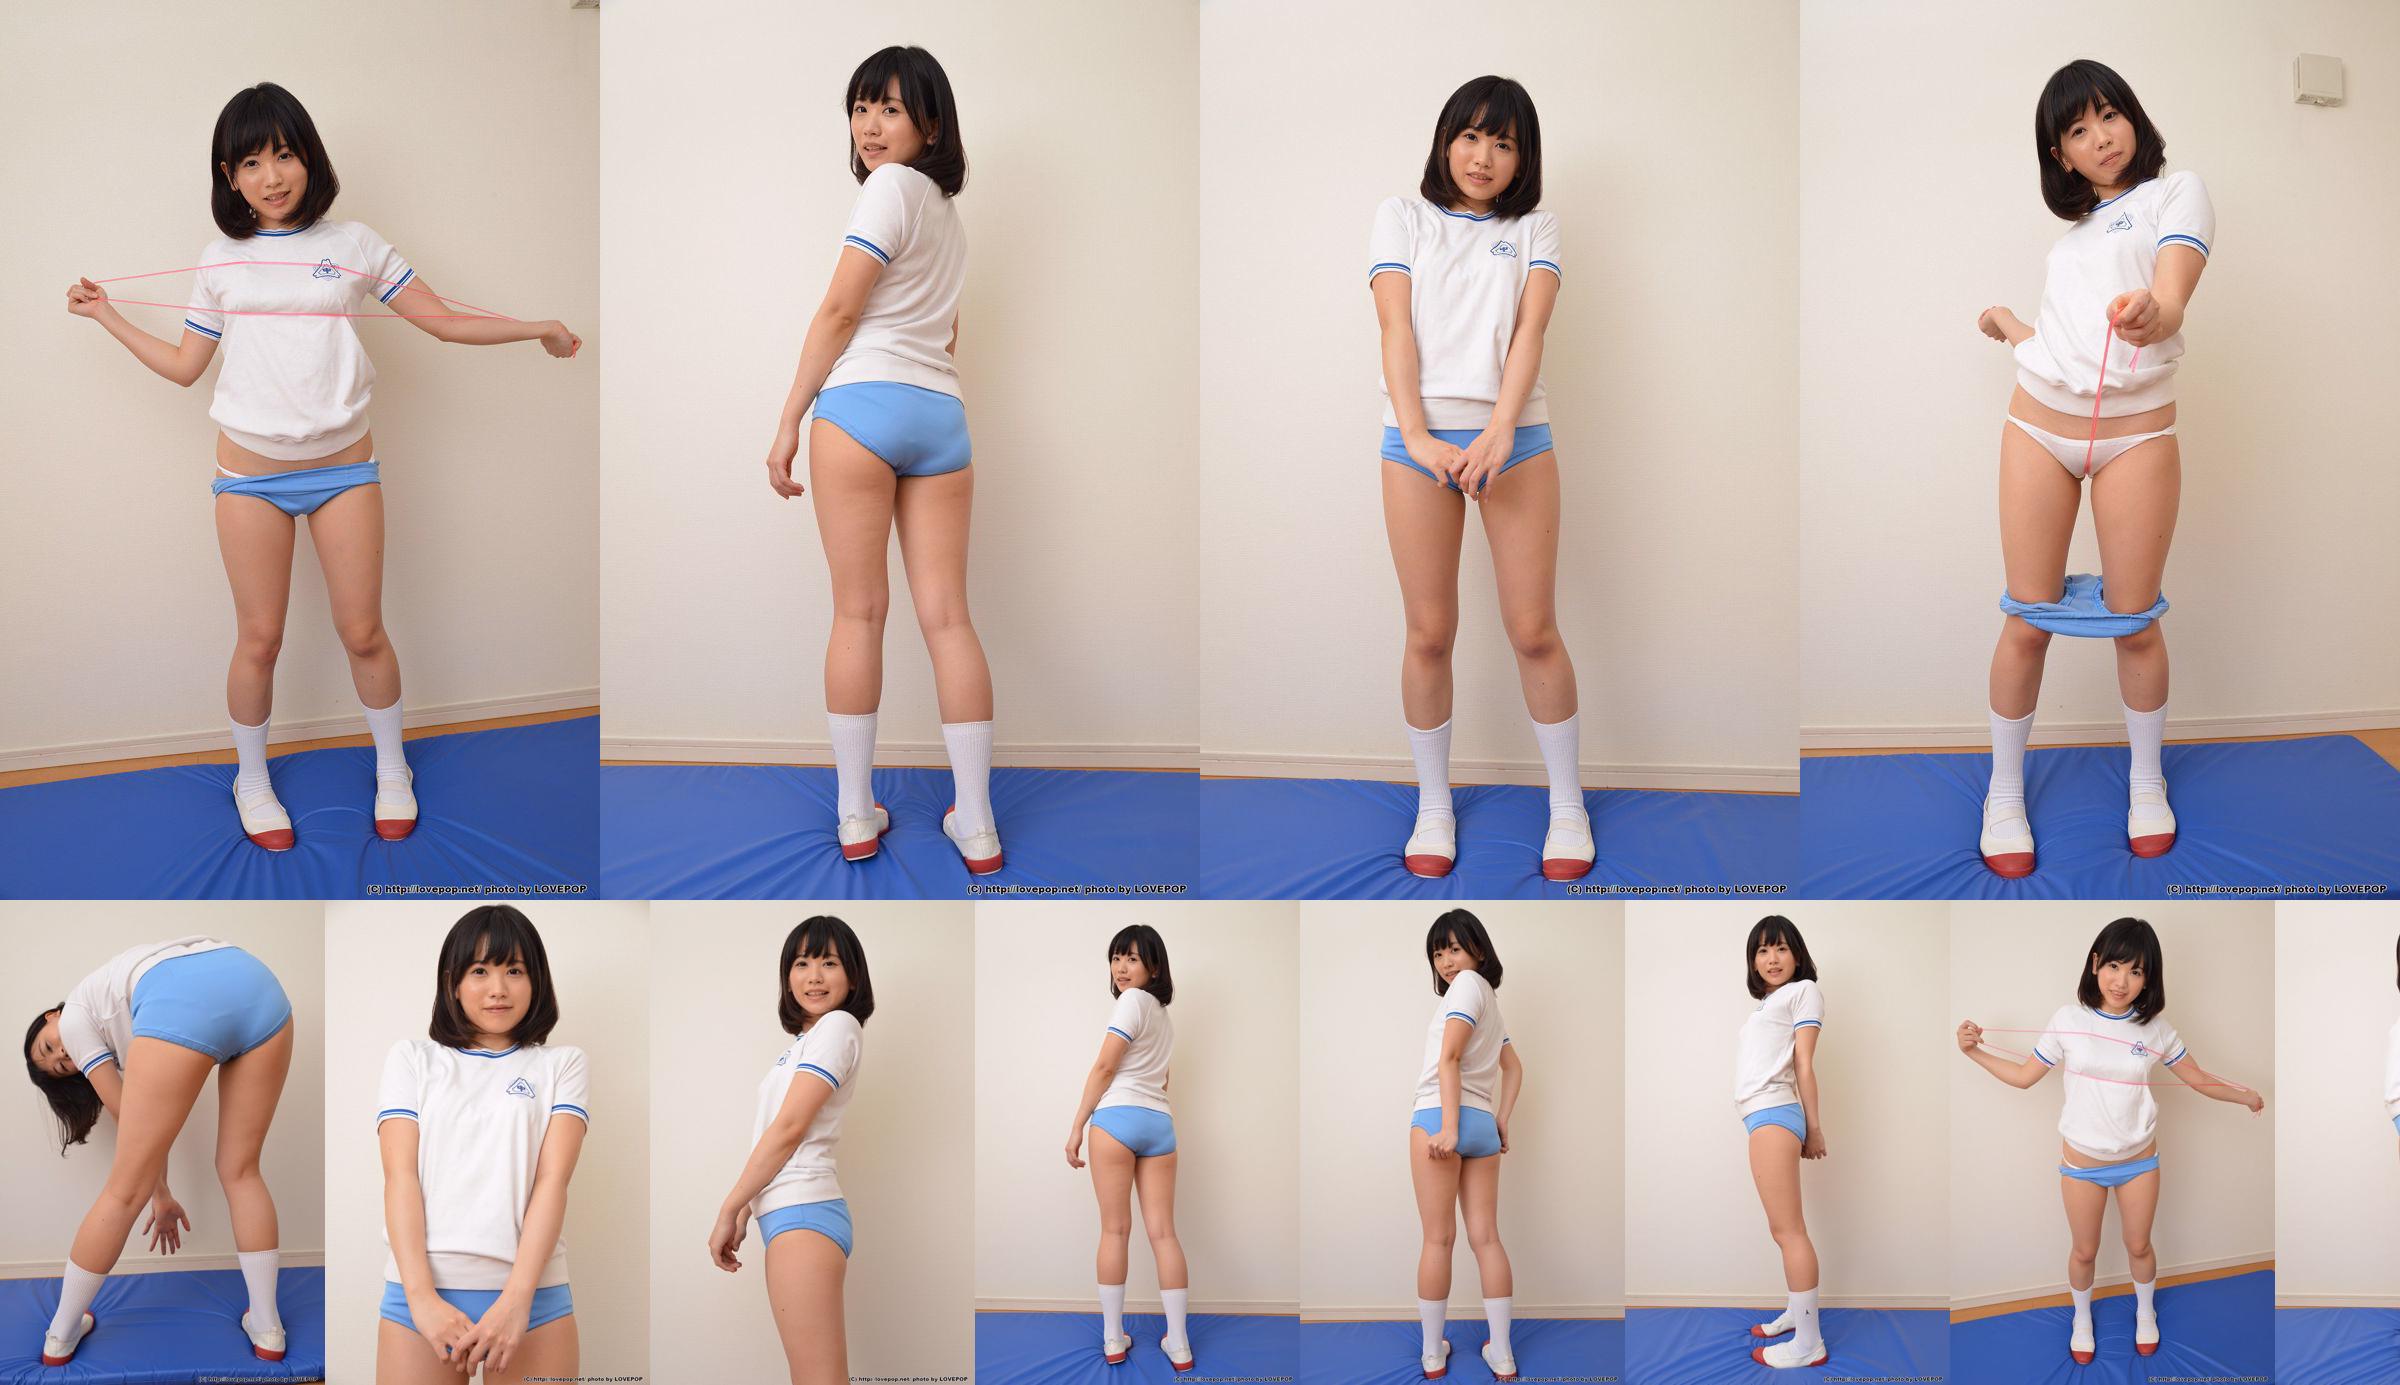 [LOVEPOP] Yuna Kimino Yuna Kimino Photoset 01 No.1a472e Halaman 3